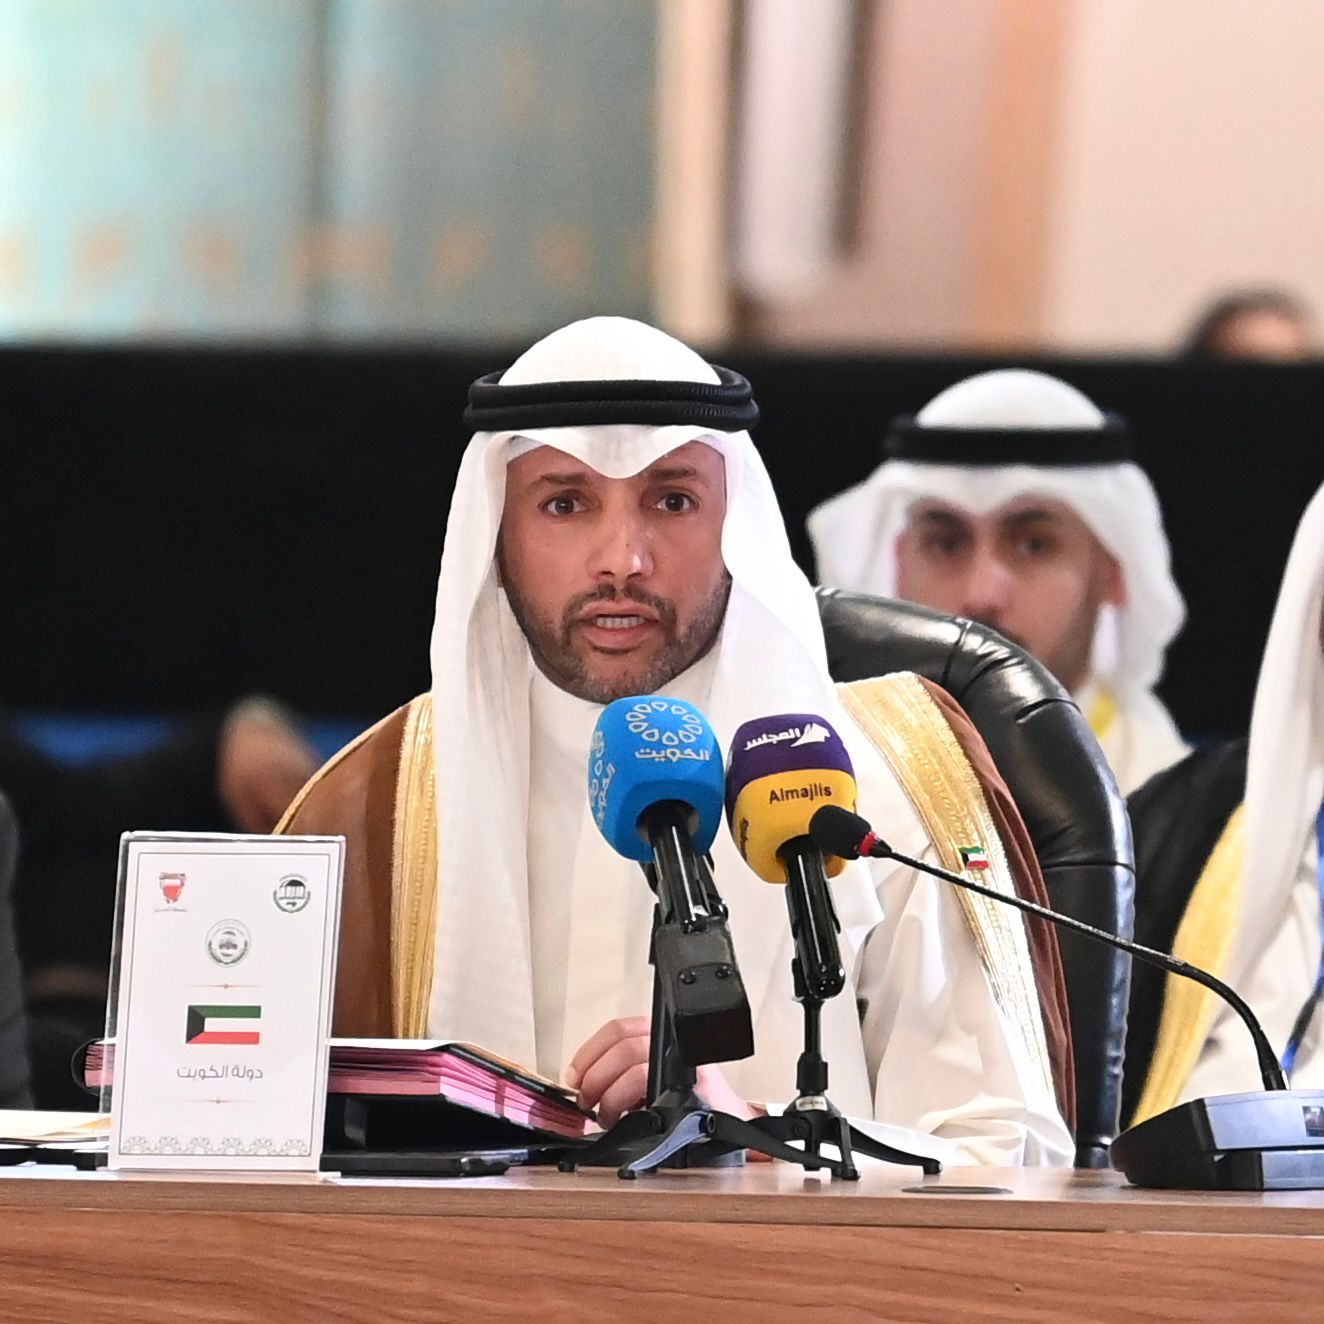 رئيس مجلس الأمة مرزوق علي الغانم خلال كلمته أمام المؤتمر ال 33 الطارئ للاتحاد البرلماني العربي